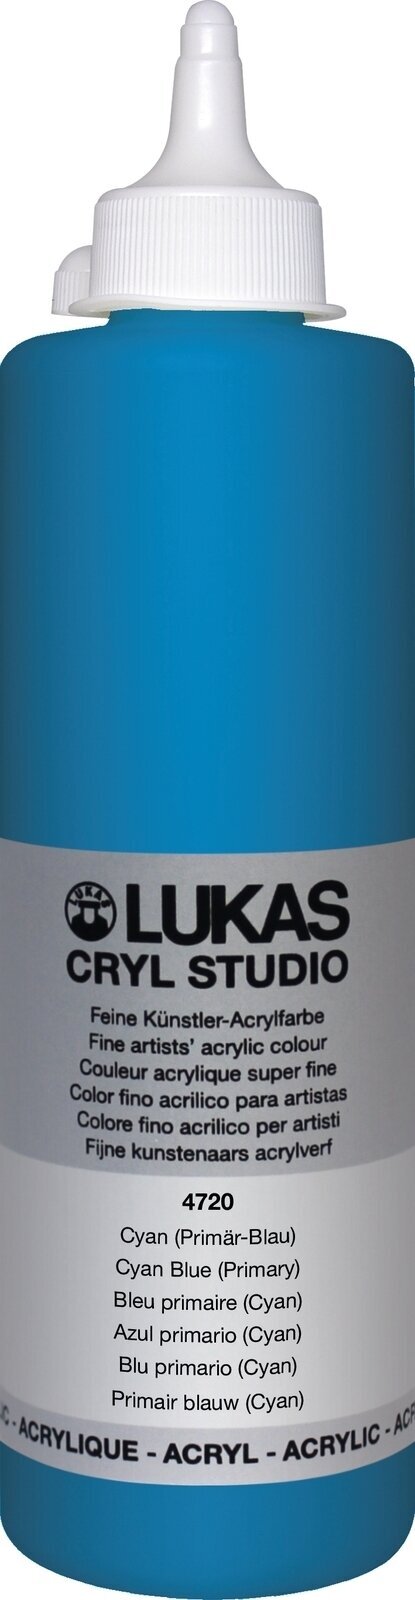 Akrilna barva Lukas Cryl Studio Akrilna barva 500 ml Cyan Blue (Primary)